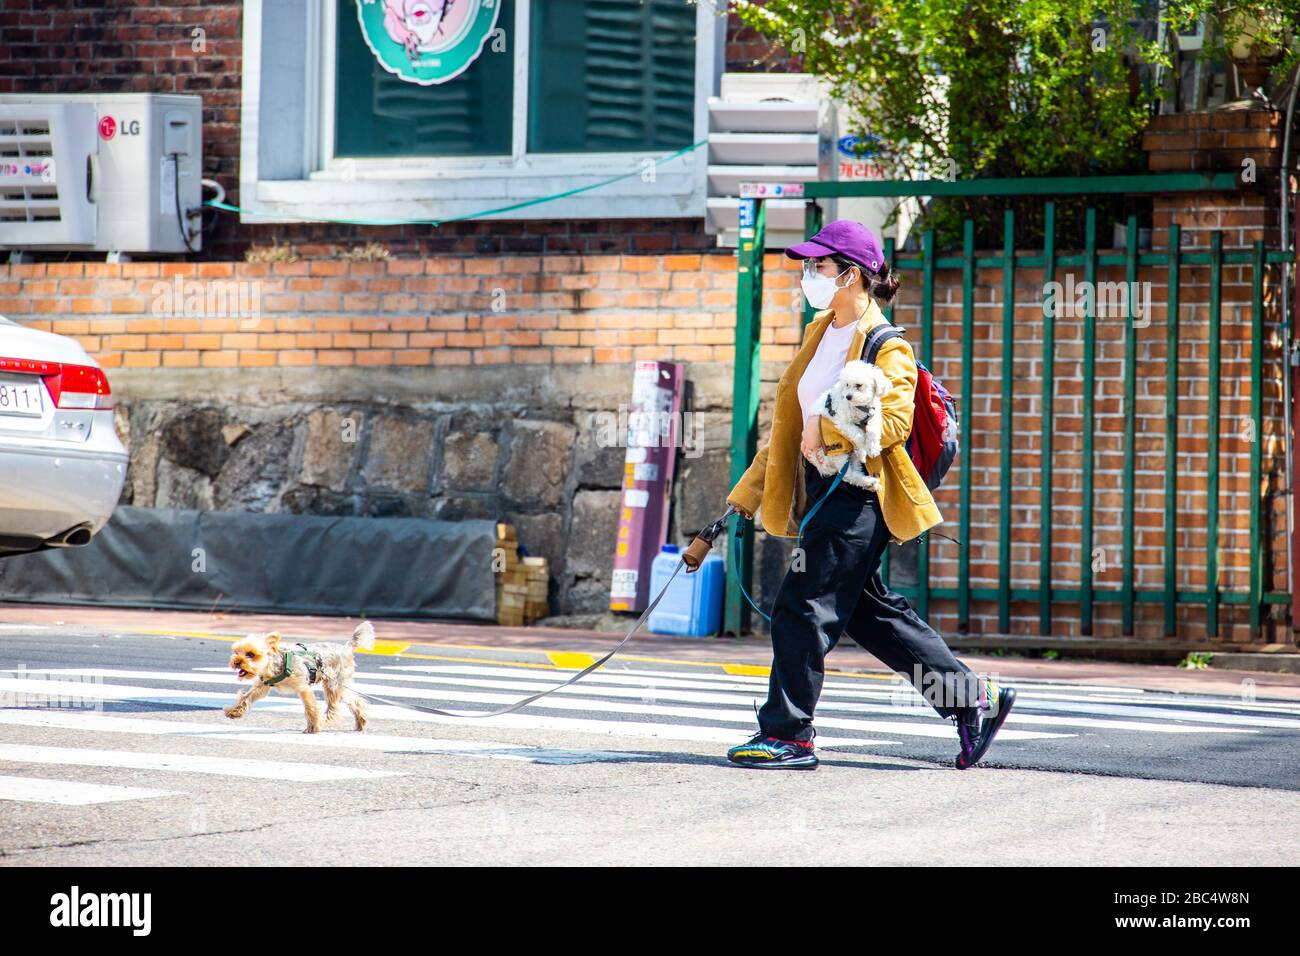 Chien marchant en portant un masque pendant la pandémie de Coronavirus, Séoul, Corée du Sud Banque D'Images